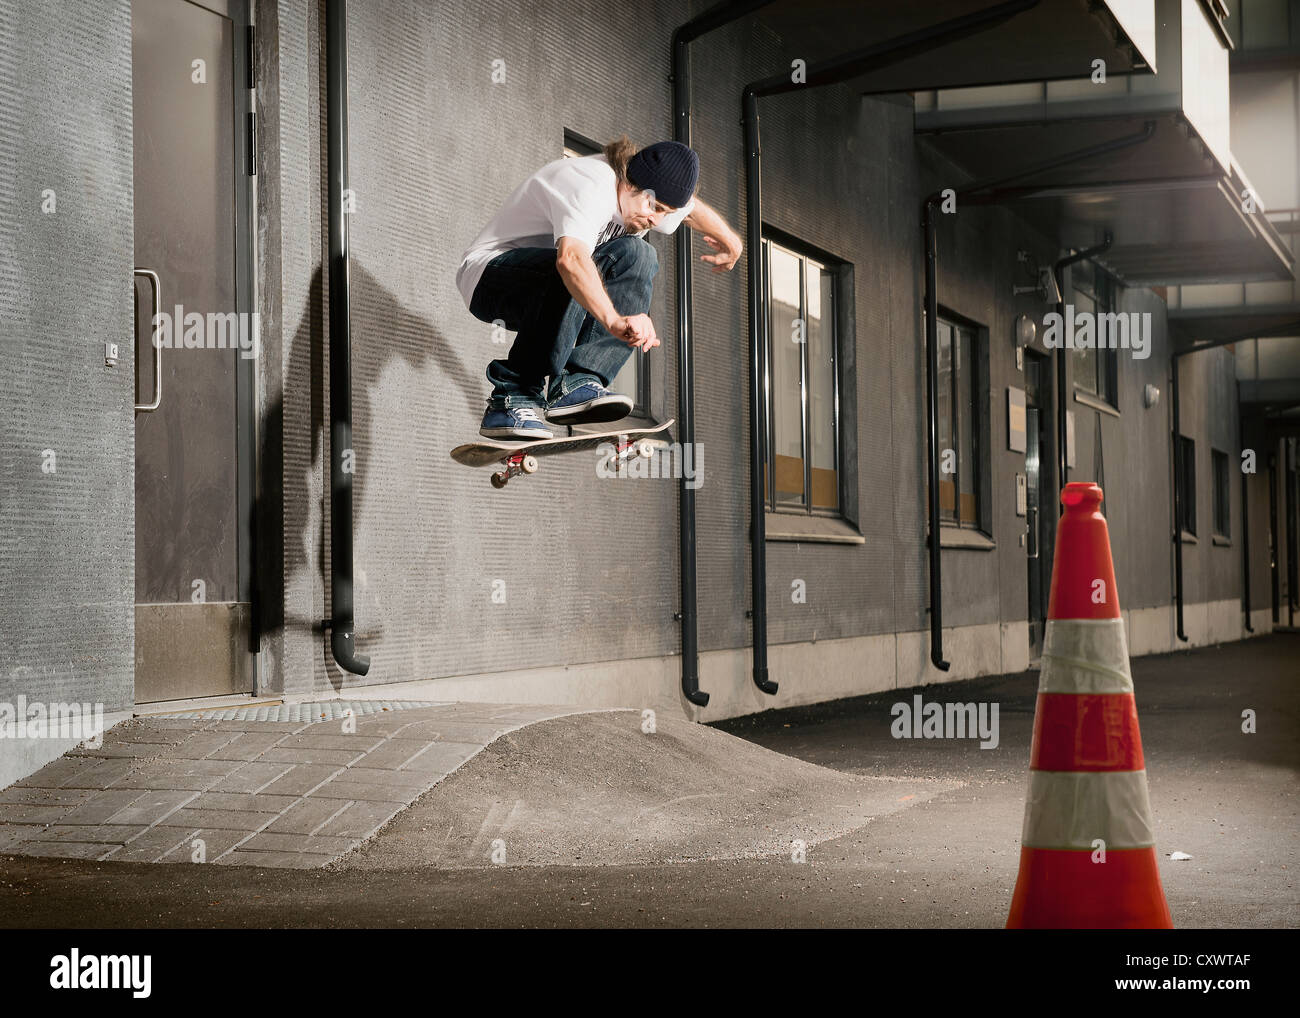 Skater jumping on urban ramp Stock Photo